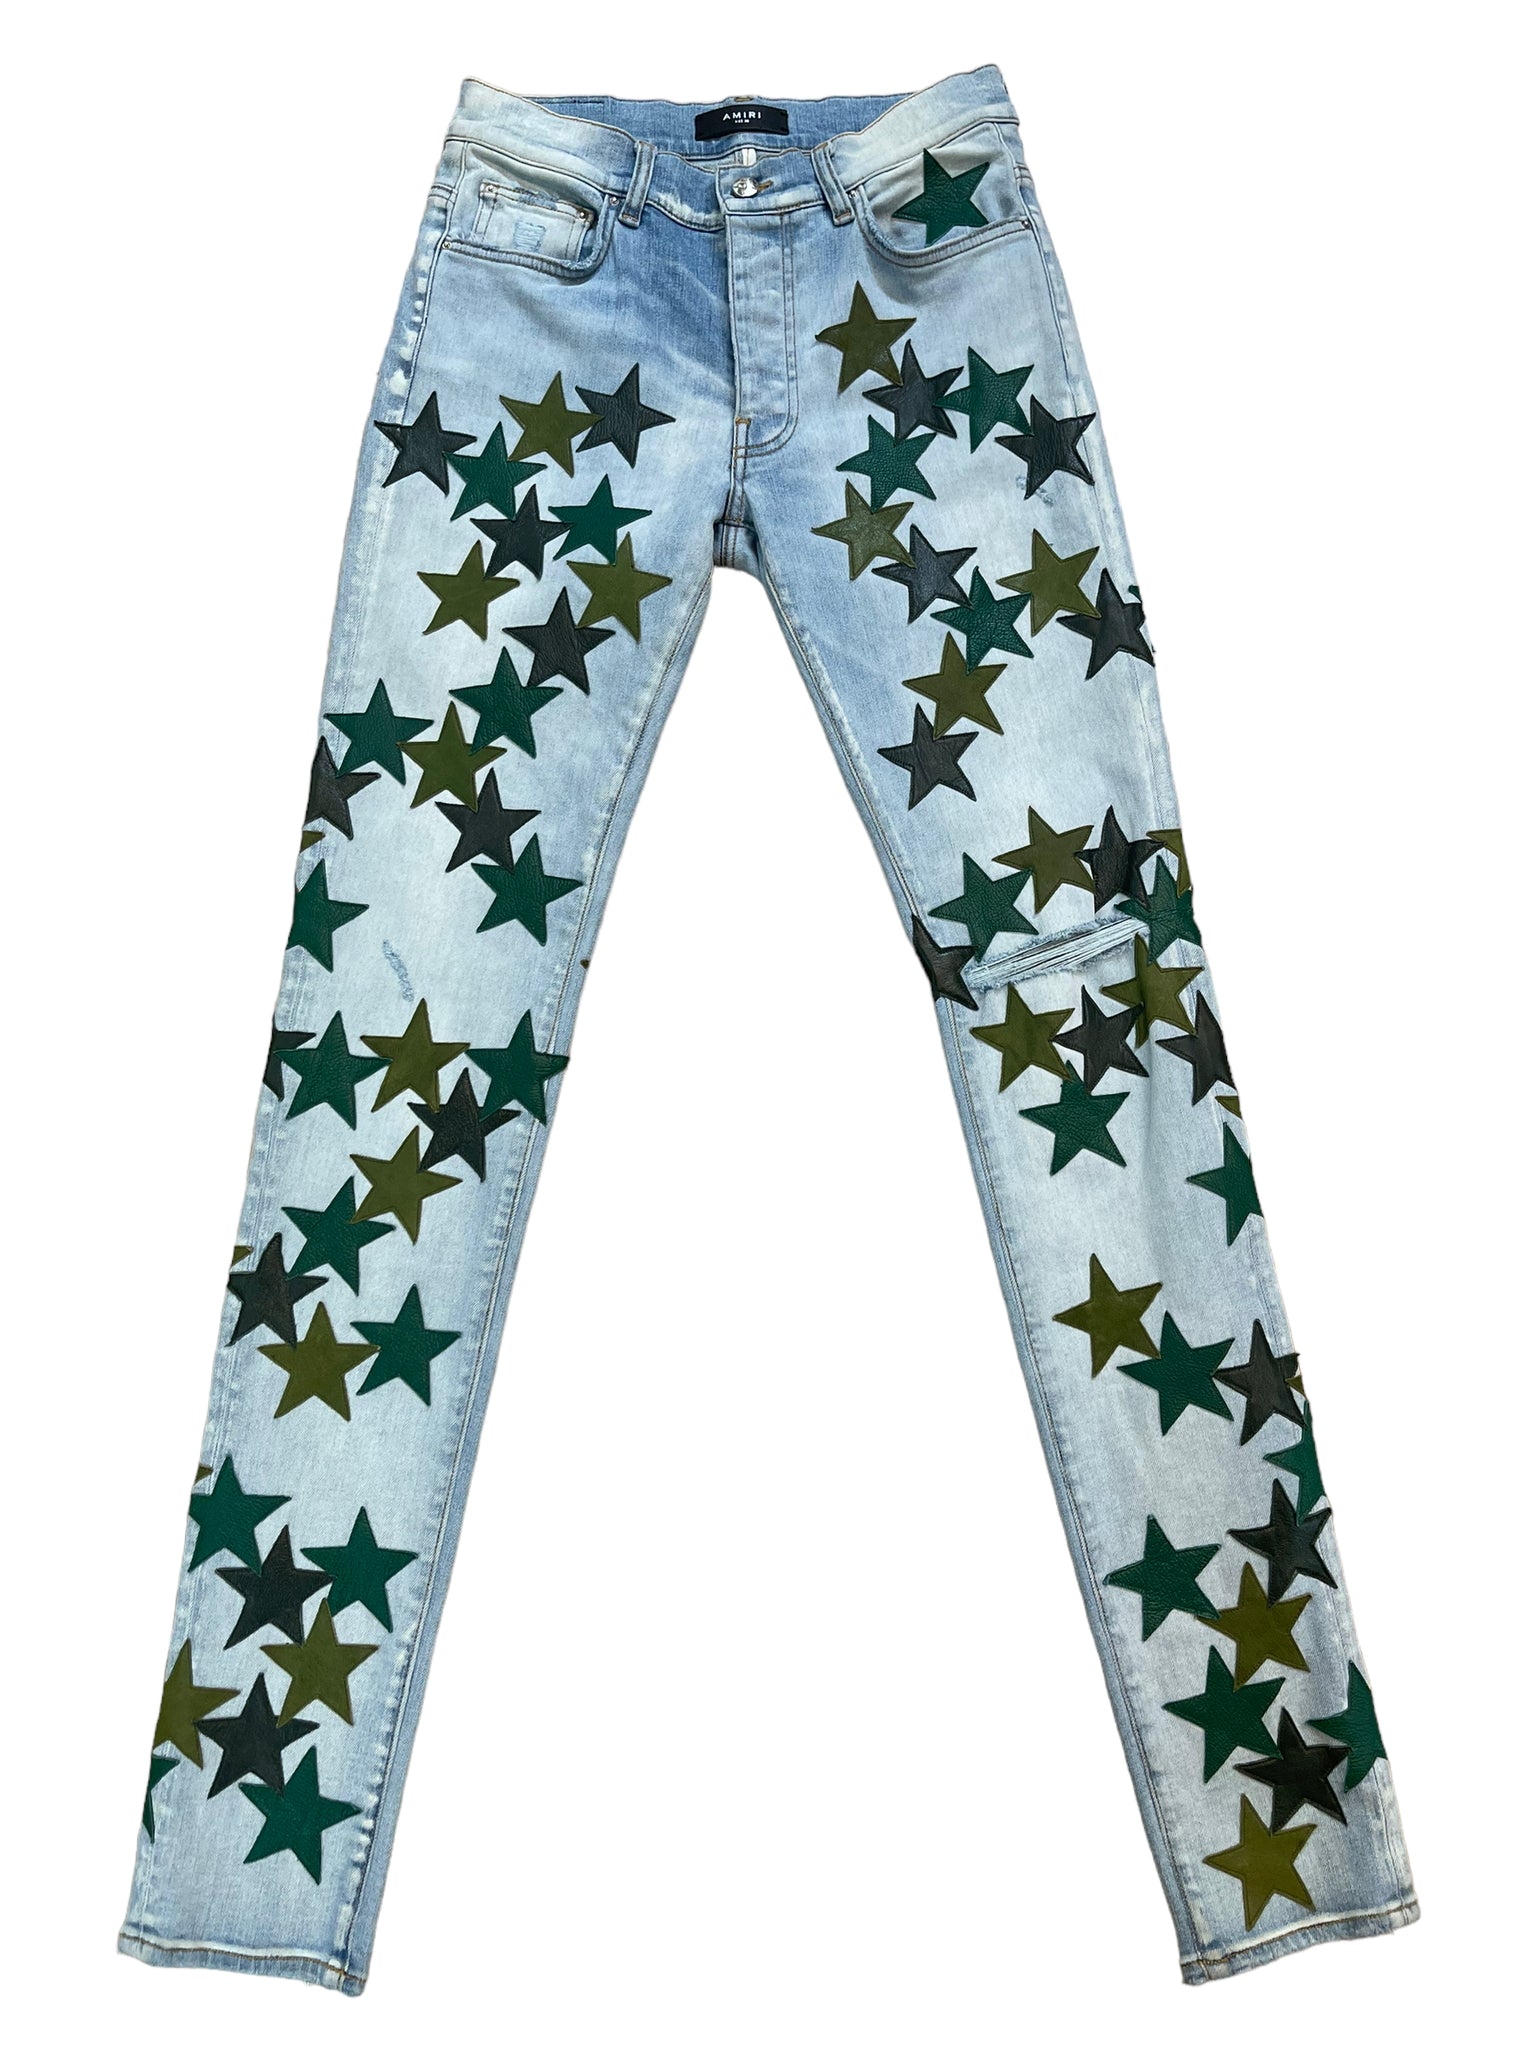 Amiri Chemist Blue Jeans "Green Stars"